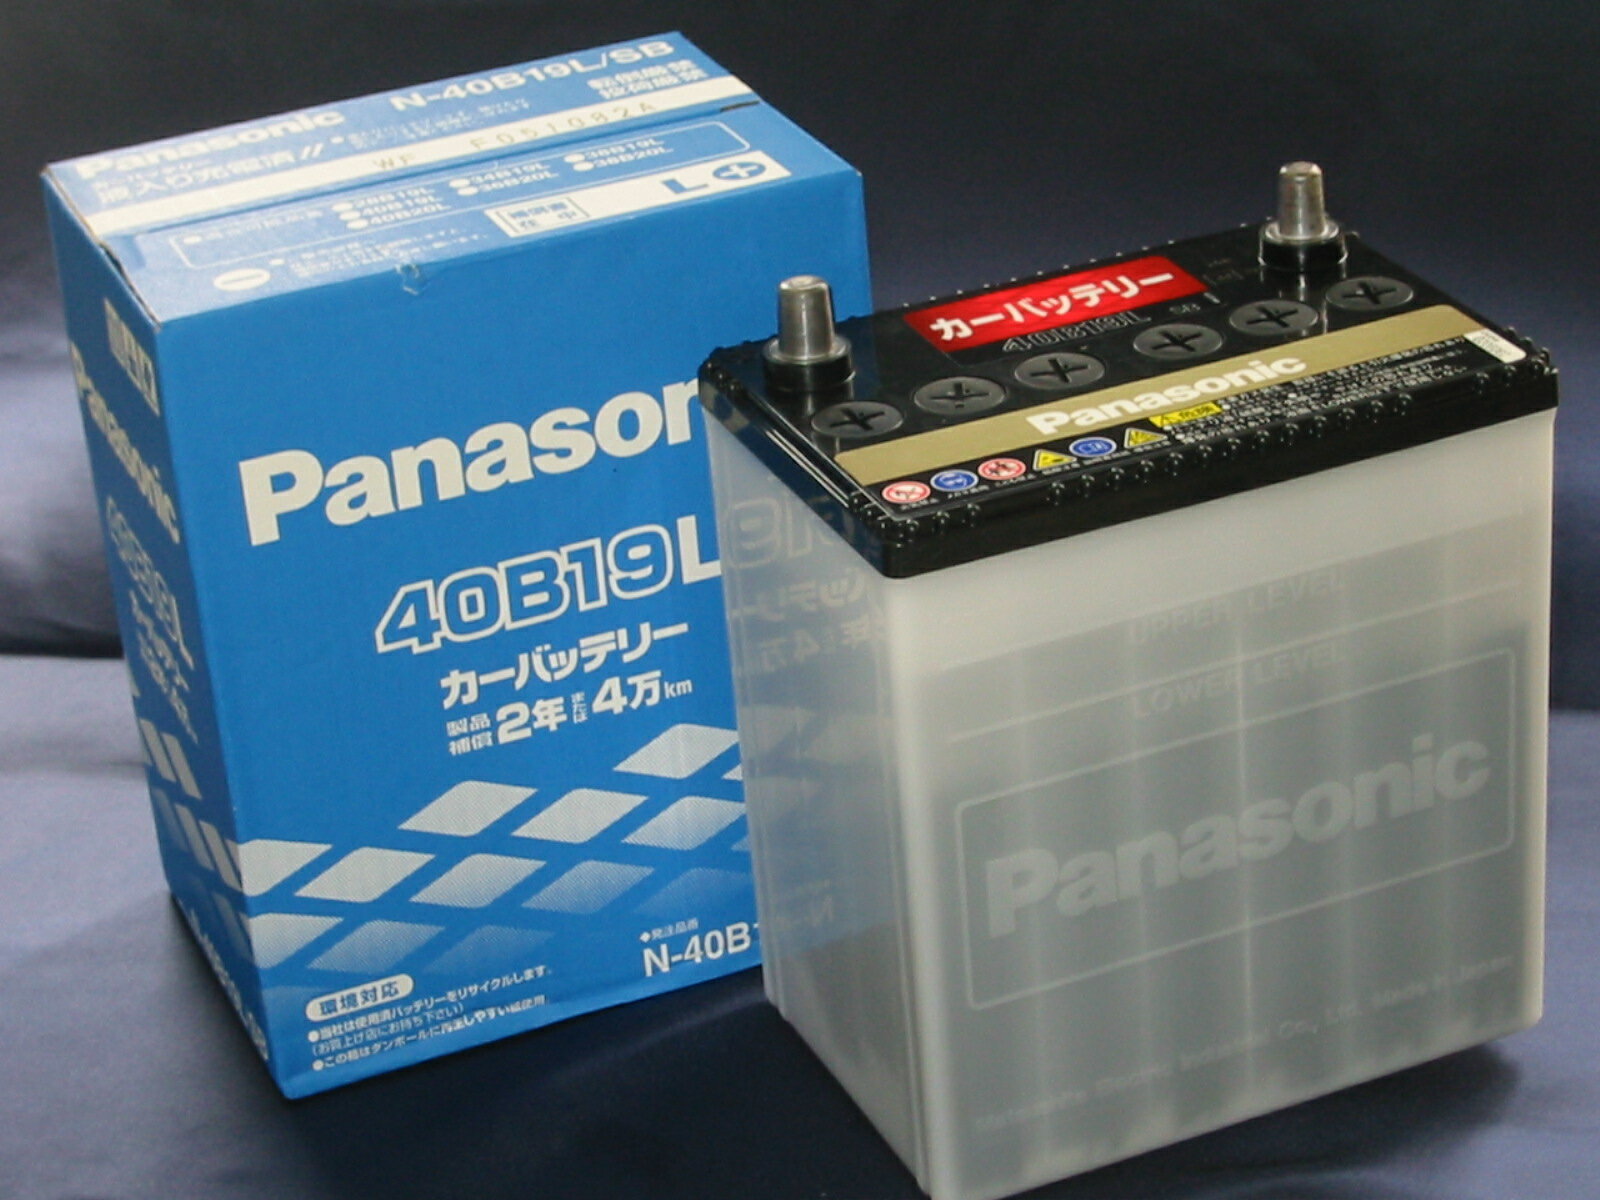 Panasonic 40B19L バッテリー